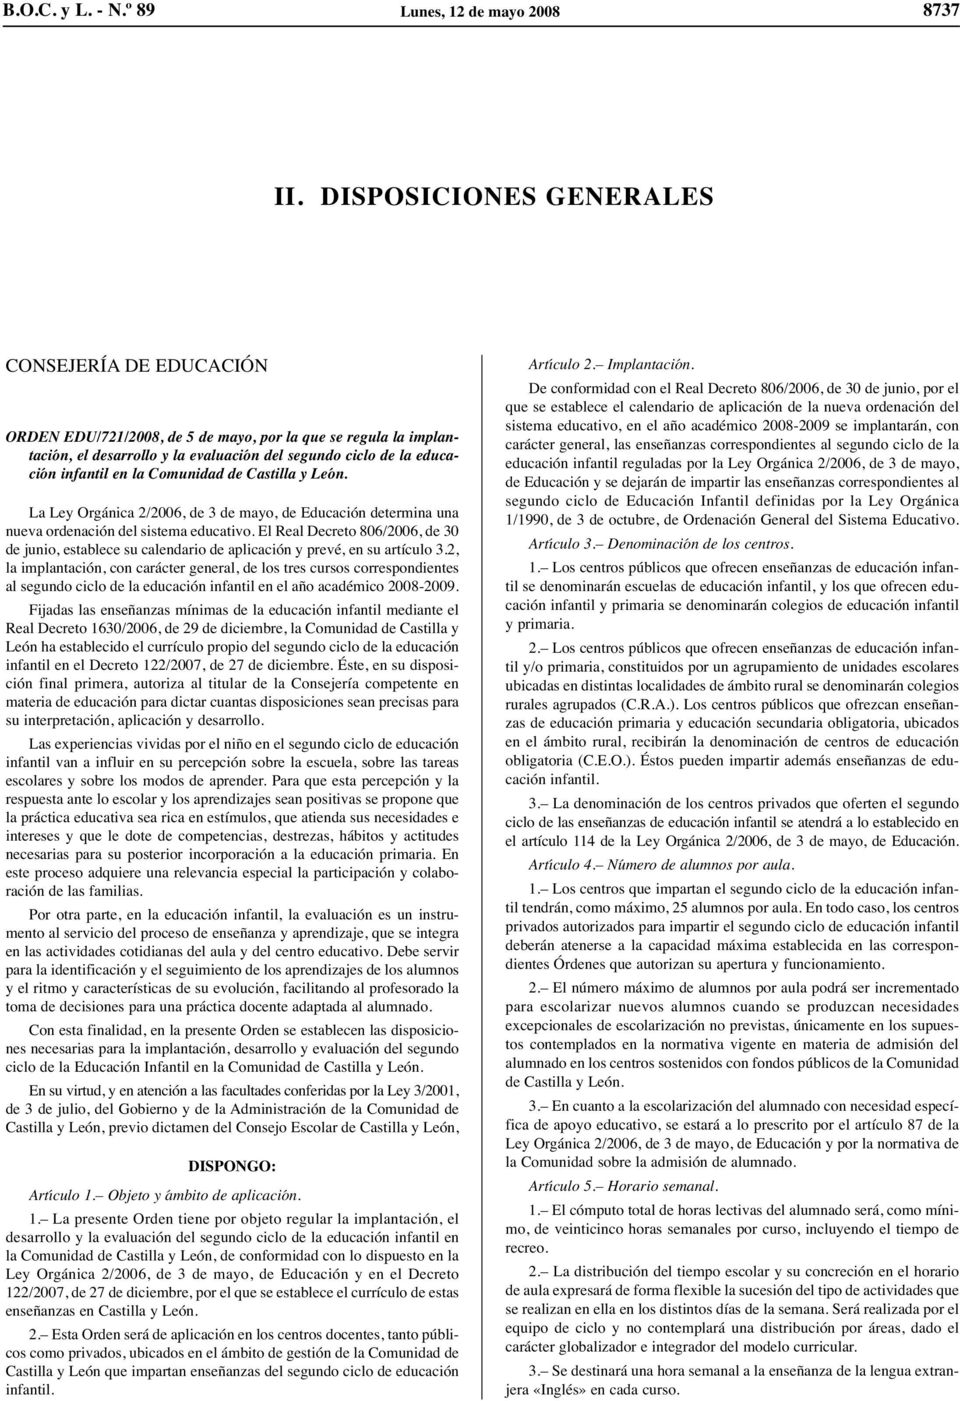 Comunidad de Castilla y León. La Ley Orgánica 2/2006, de 3 de mayo, de Educación determina una nueva ordenación del sistema educativo.